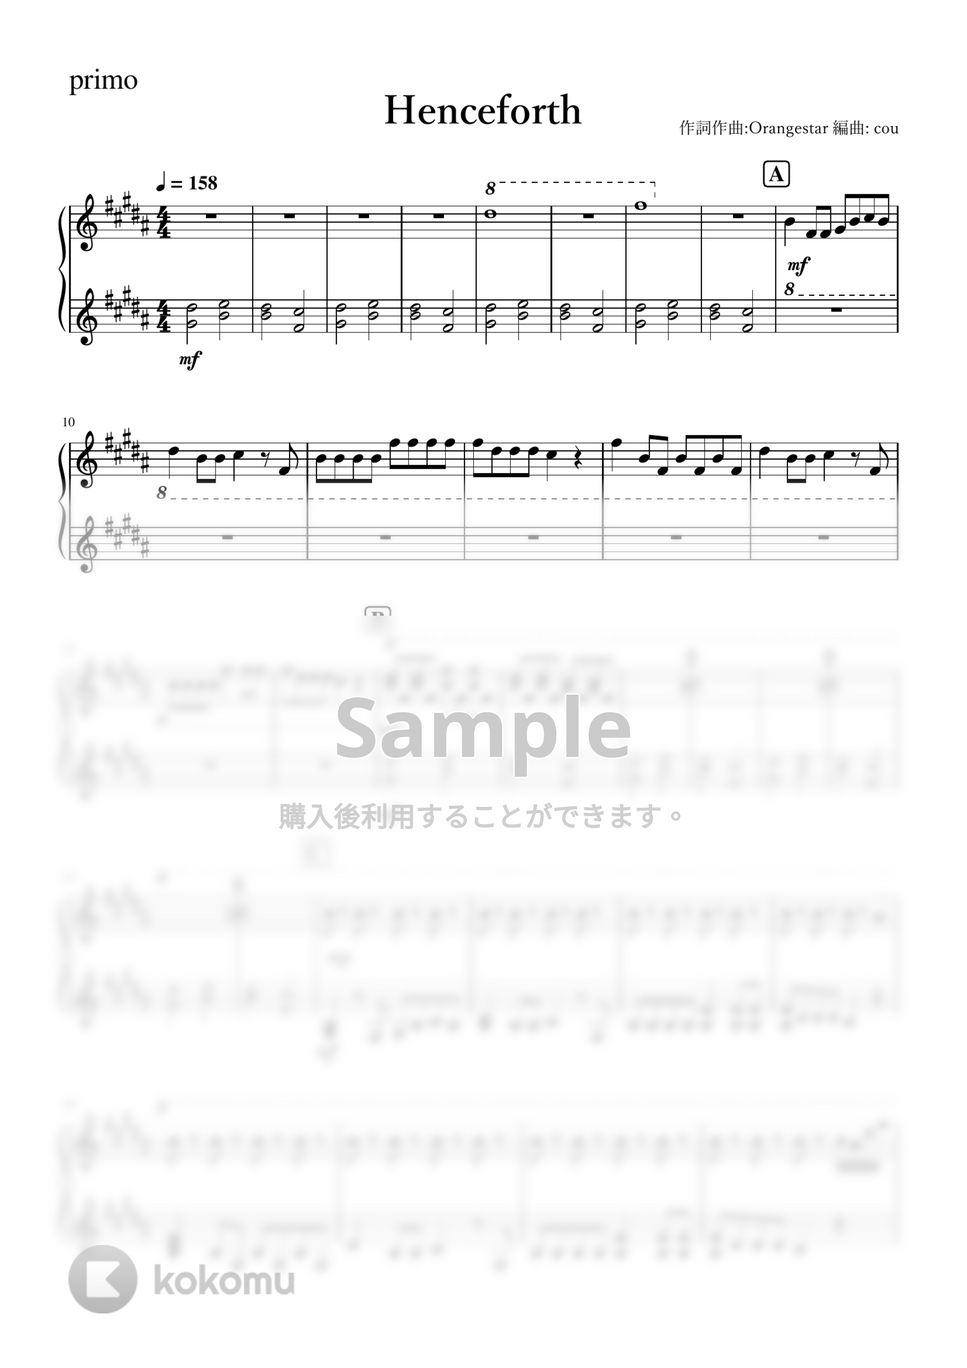 Orangestar - Henceforce (ピアノ連弾) by cou